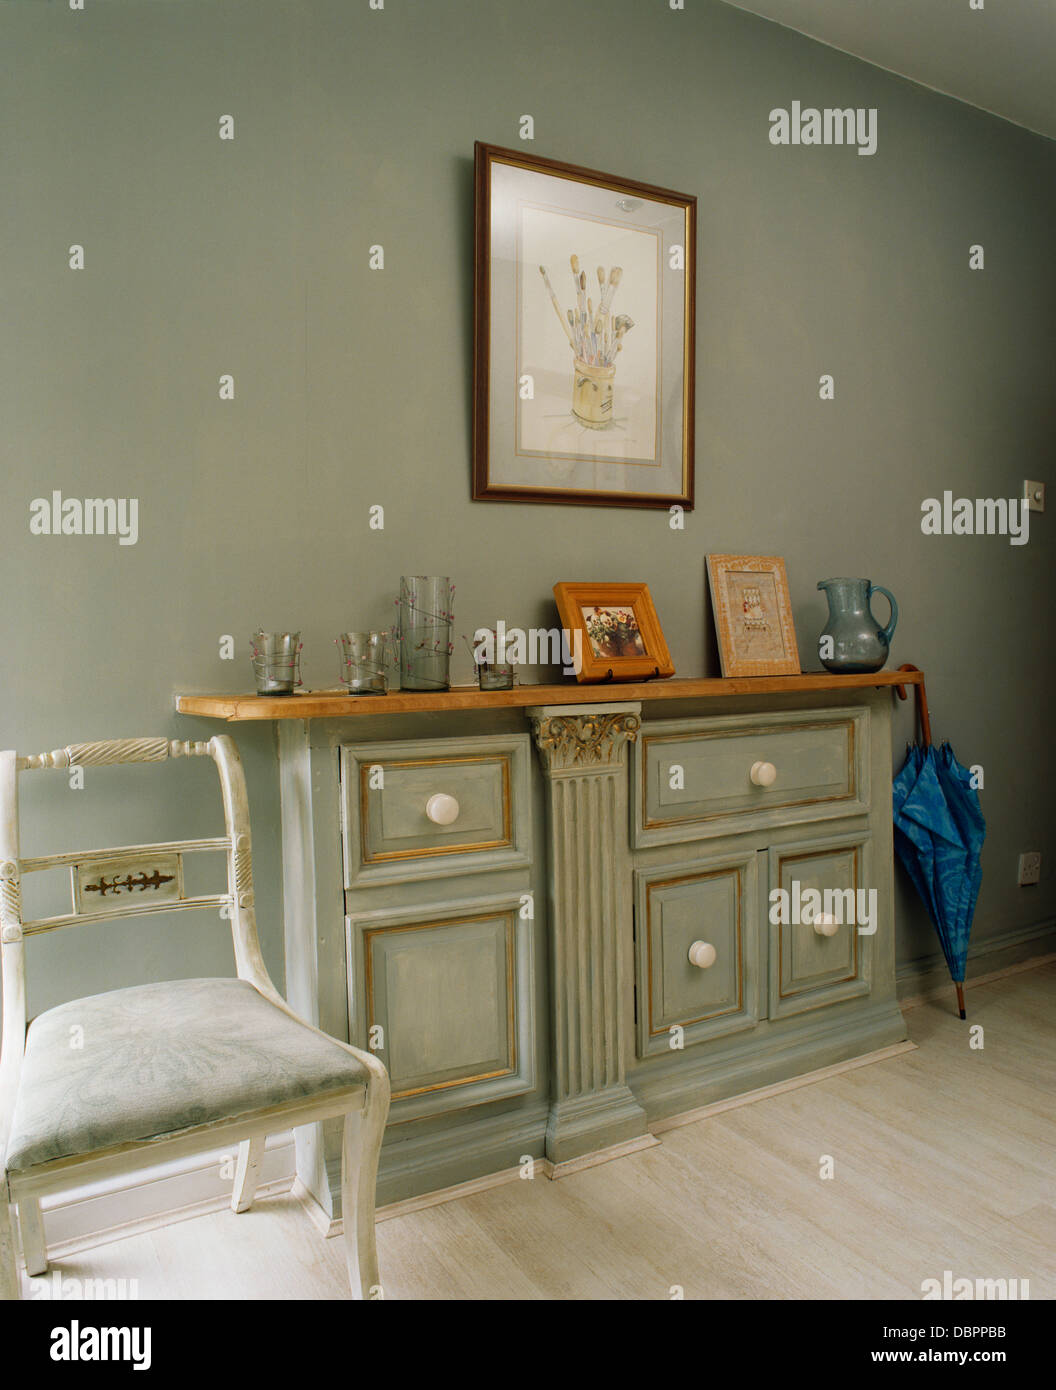 Blasse graue Konsole mit distressed Effekt Lackierung in grau mit weiß lackierten Stuhl Stockfoto